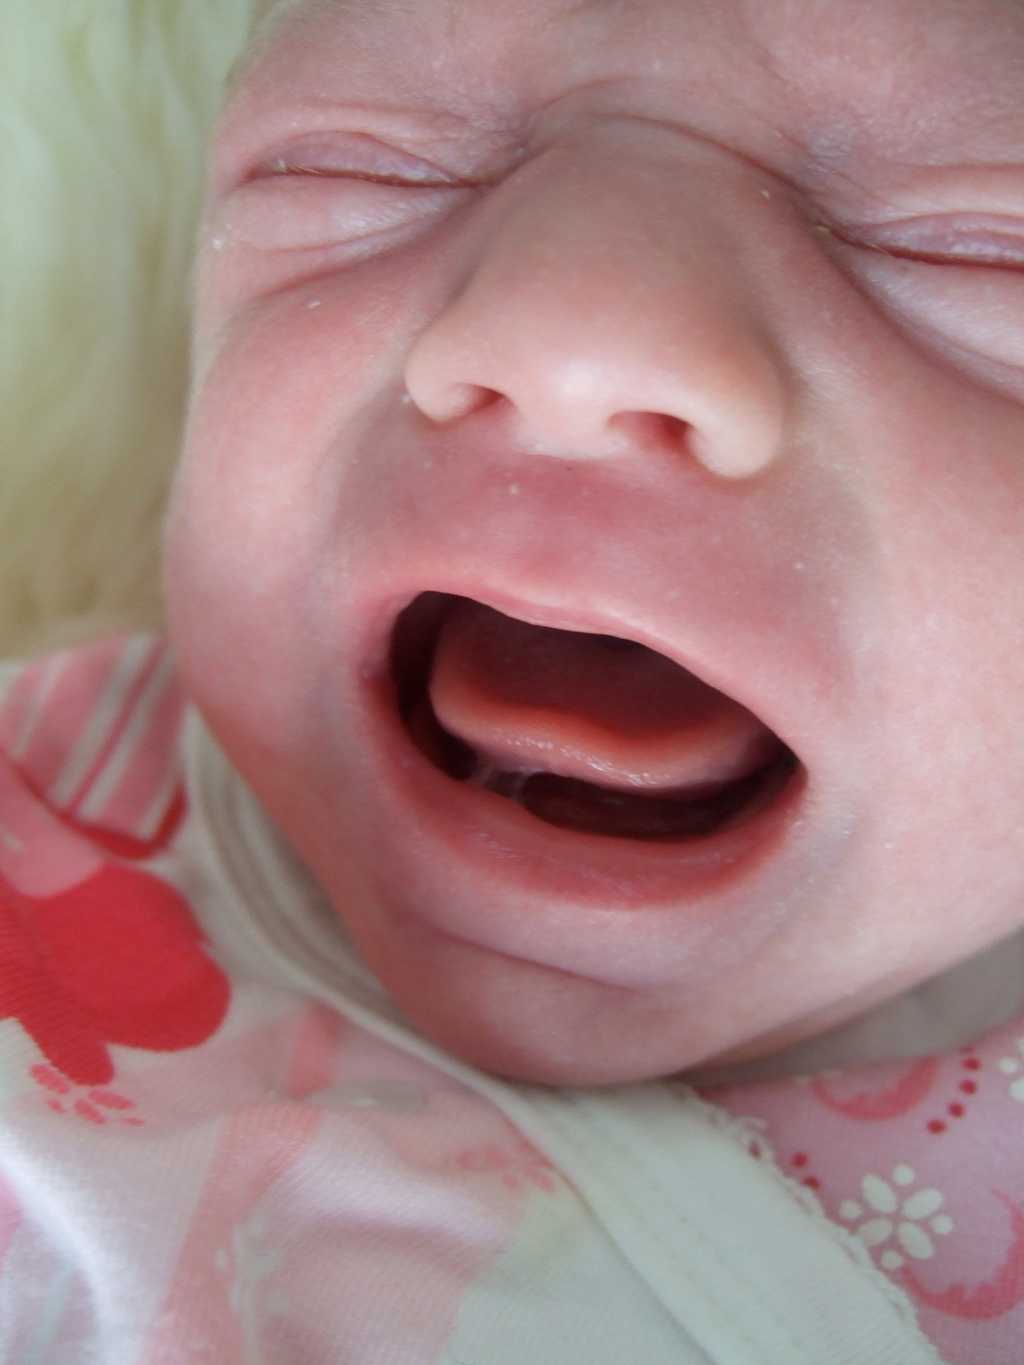 La solution miracle pour empêcher les bébés de pleurer n'existe pas et les parents devront toujours se lever pendant la nuit pour rassurer leur enfant. Mais à quelle vitesse accourir dans la chambre ? À chacun de l'estimer... © Chalky Lives, Fotopédia, cc by sa 2.0